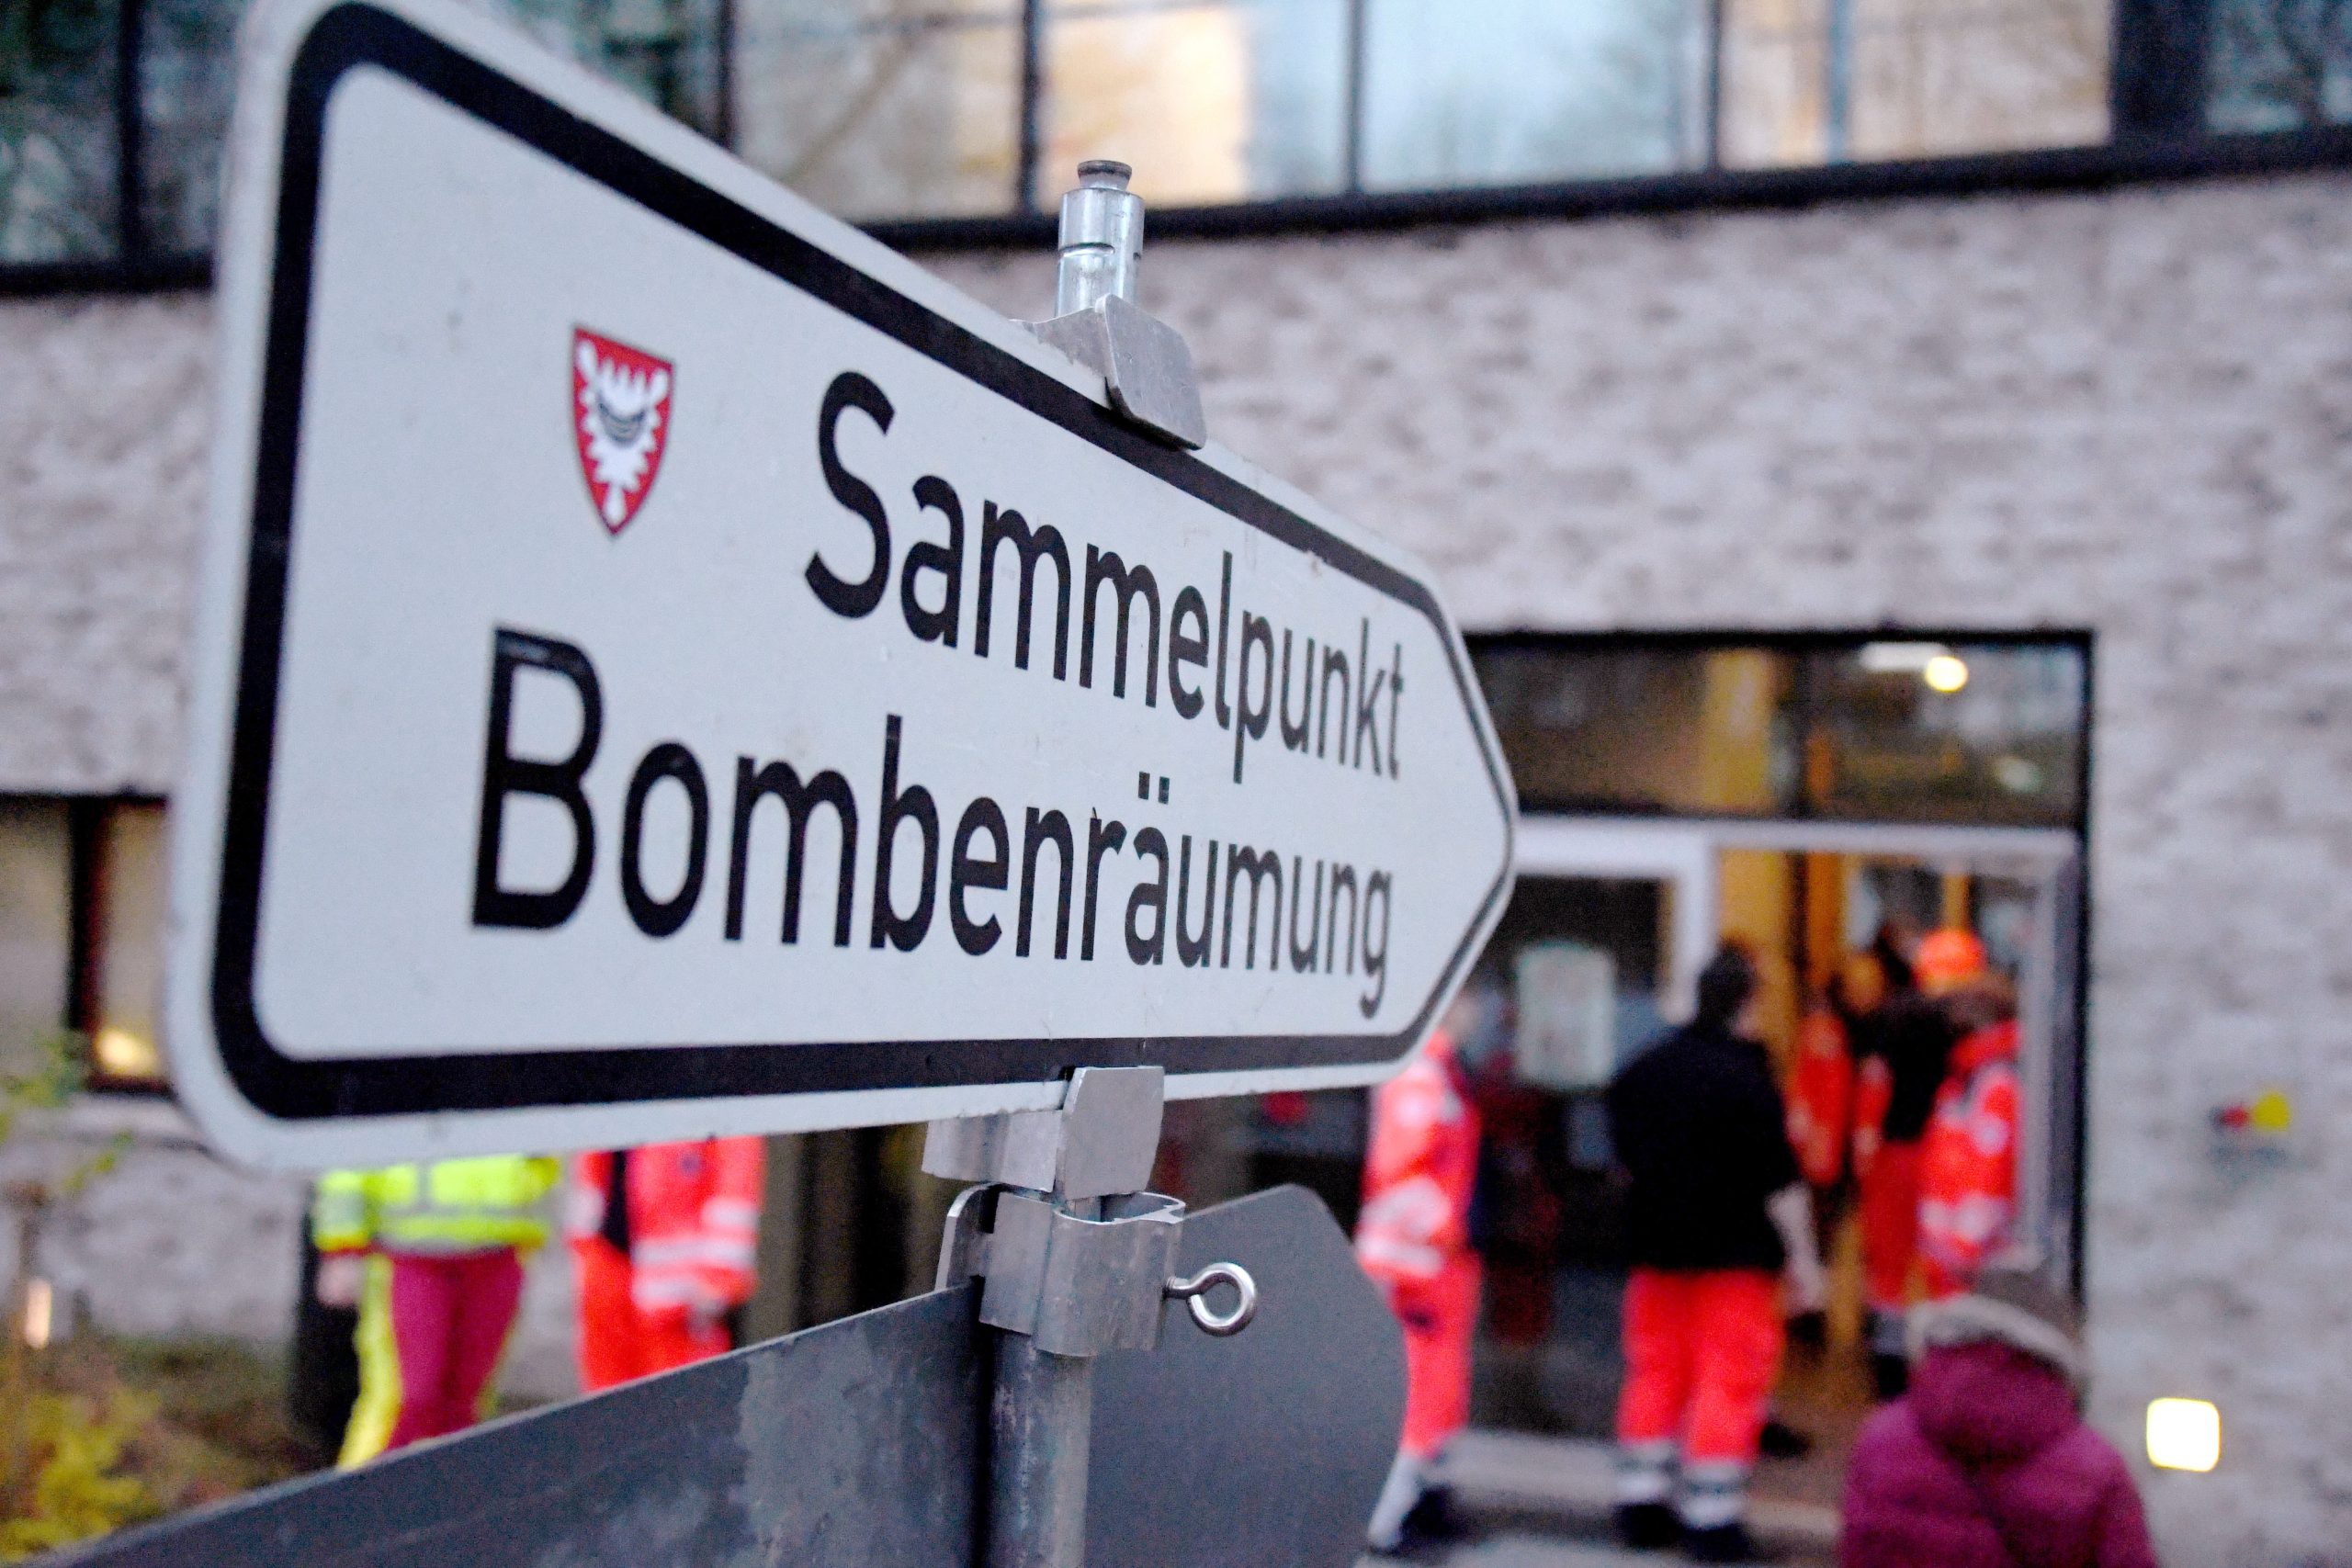 Für die von der Bombenentschärfung betroffenen Anwohner in Kiel gibt es eine Ersatzunterkunft. (Symbolbild)